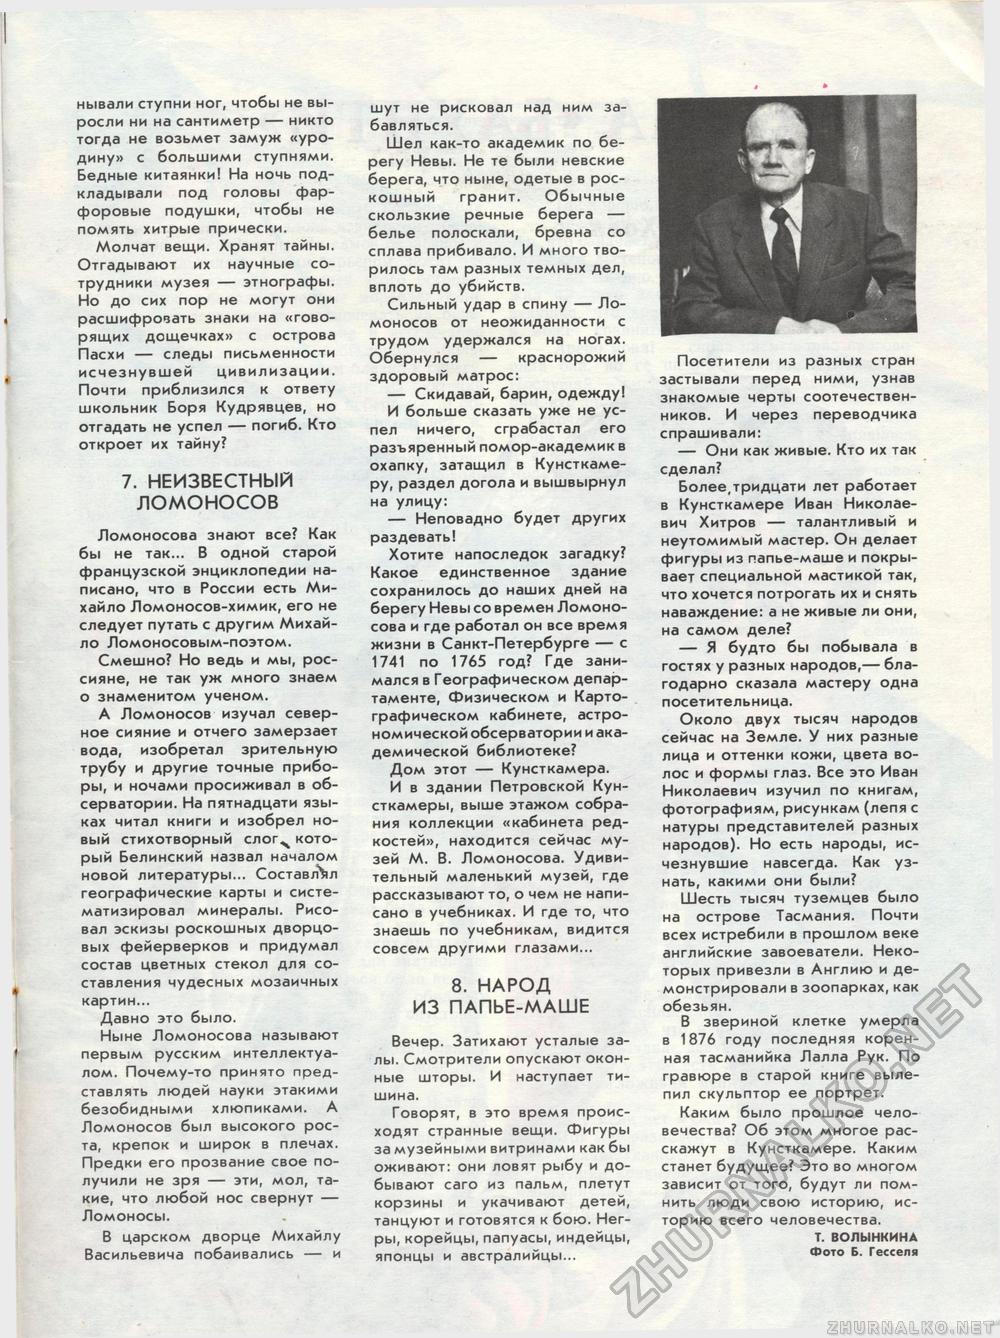  1991-11,  5